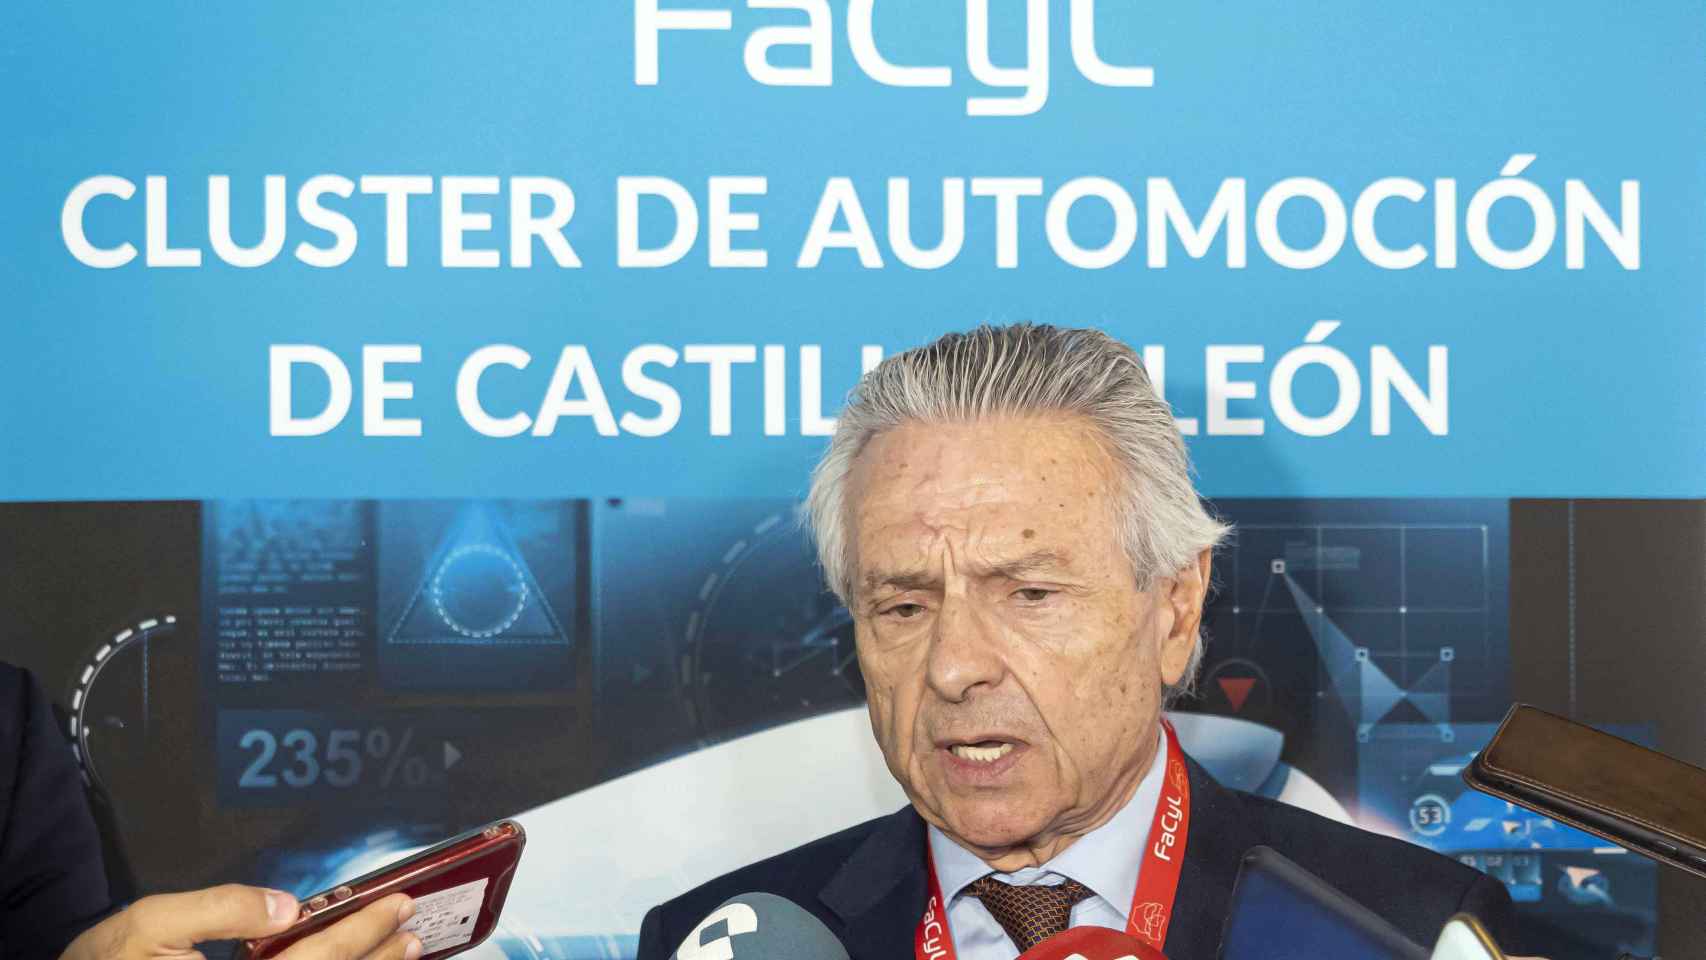 Félix Cano, presidente del clúster de automoción de Castilla y León, Facyl